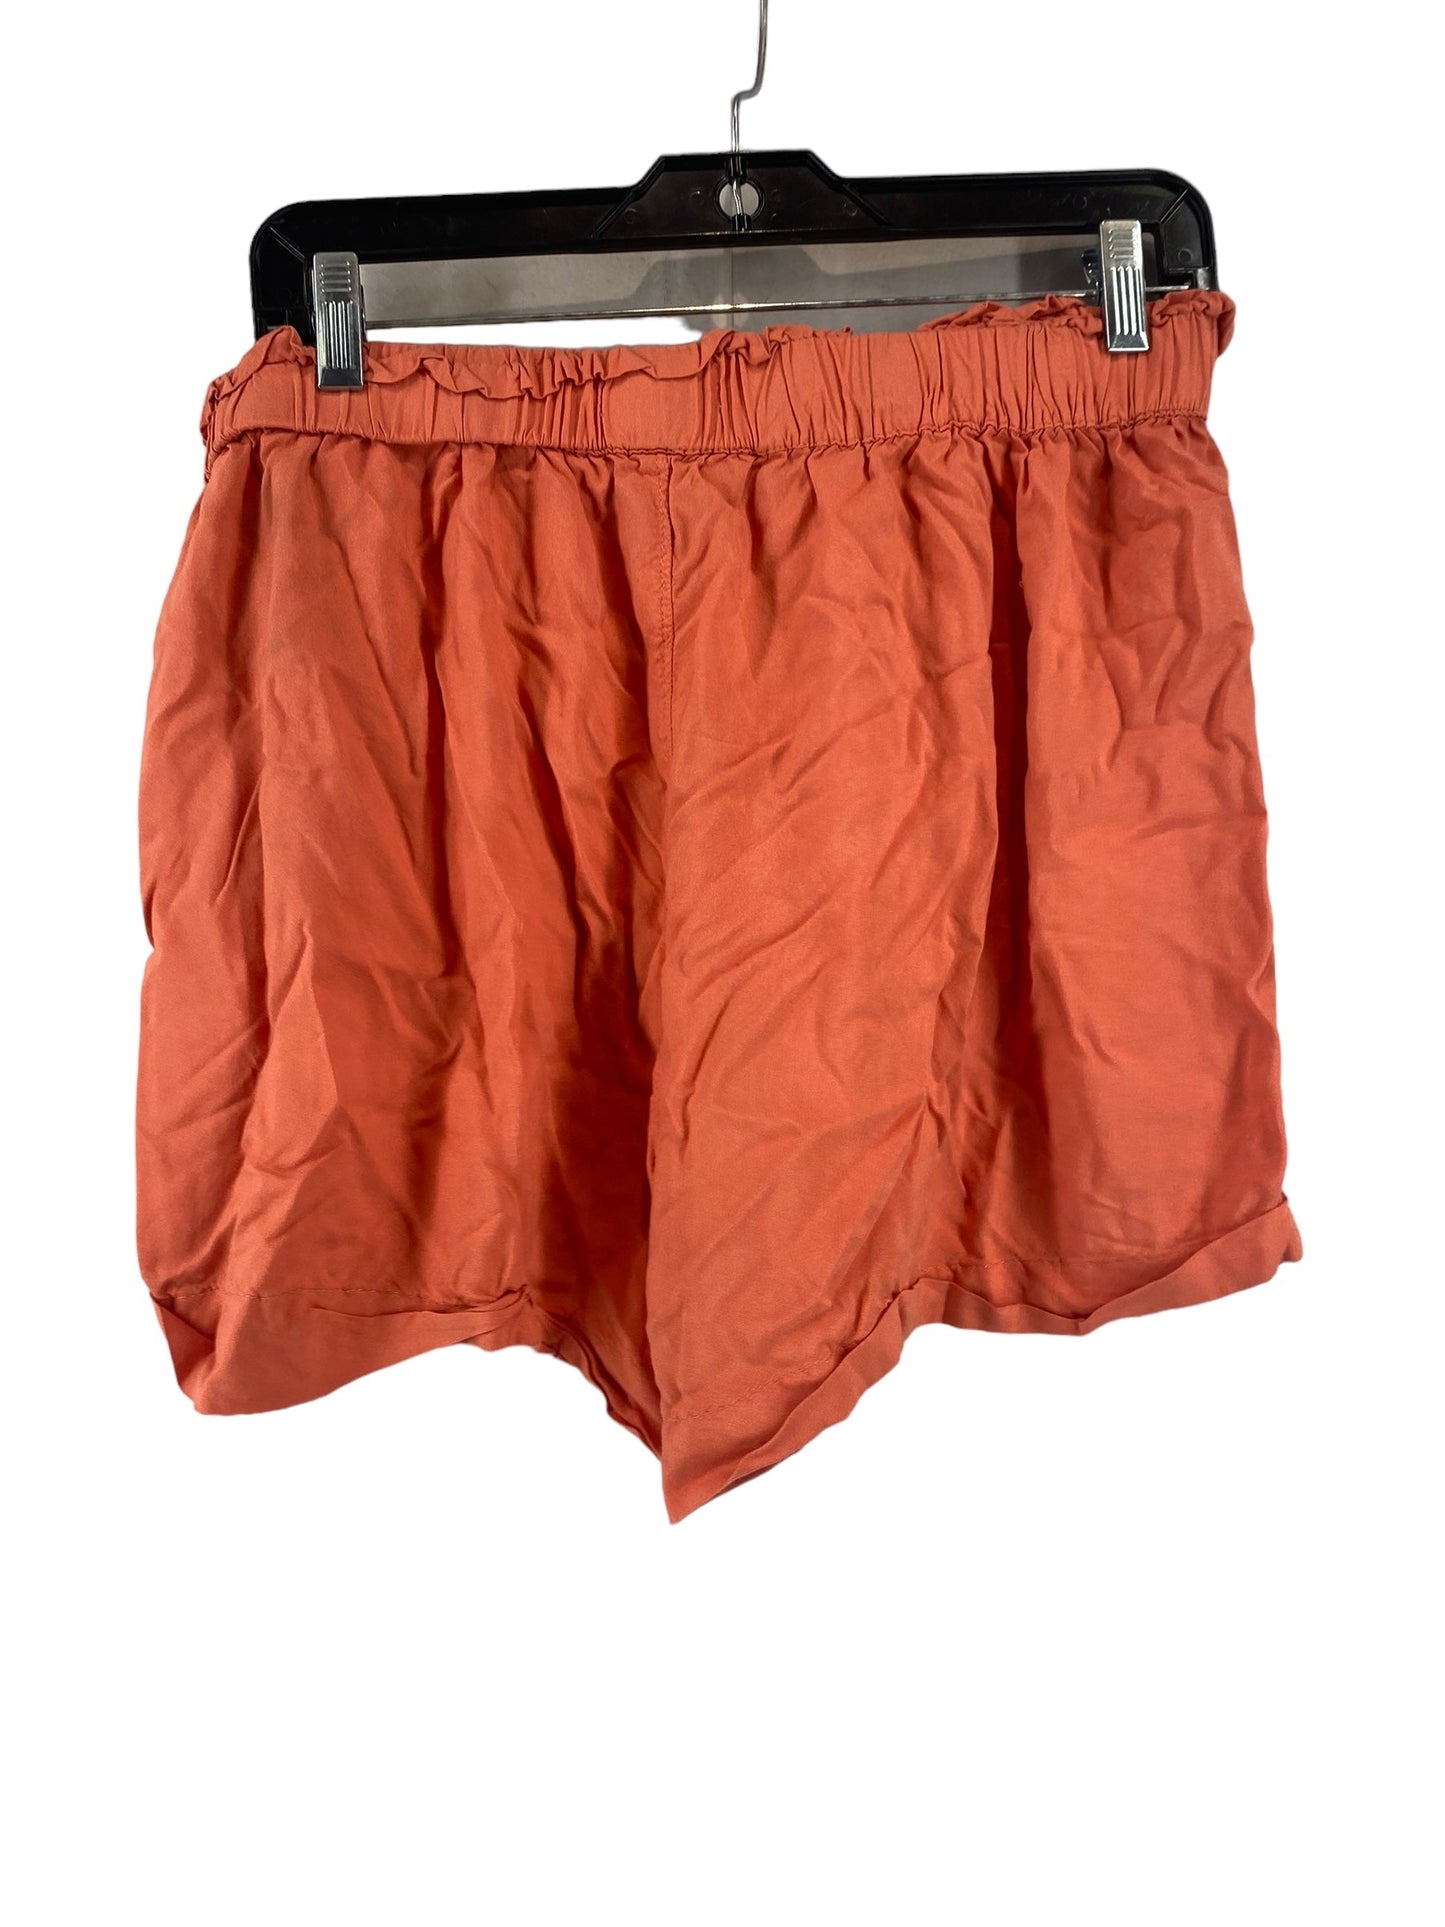 Orange Shorts So, Size Xl